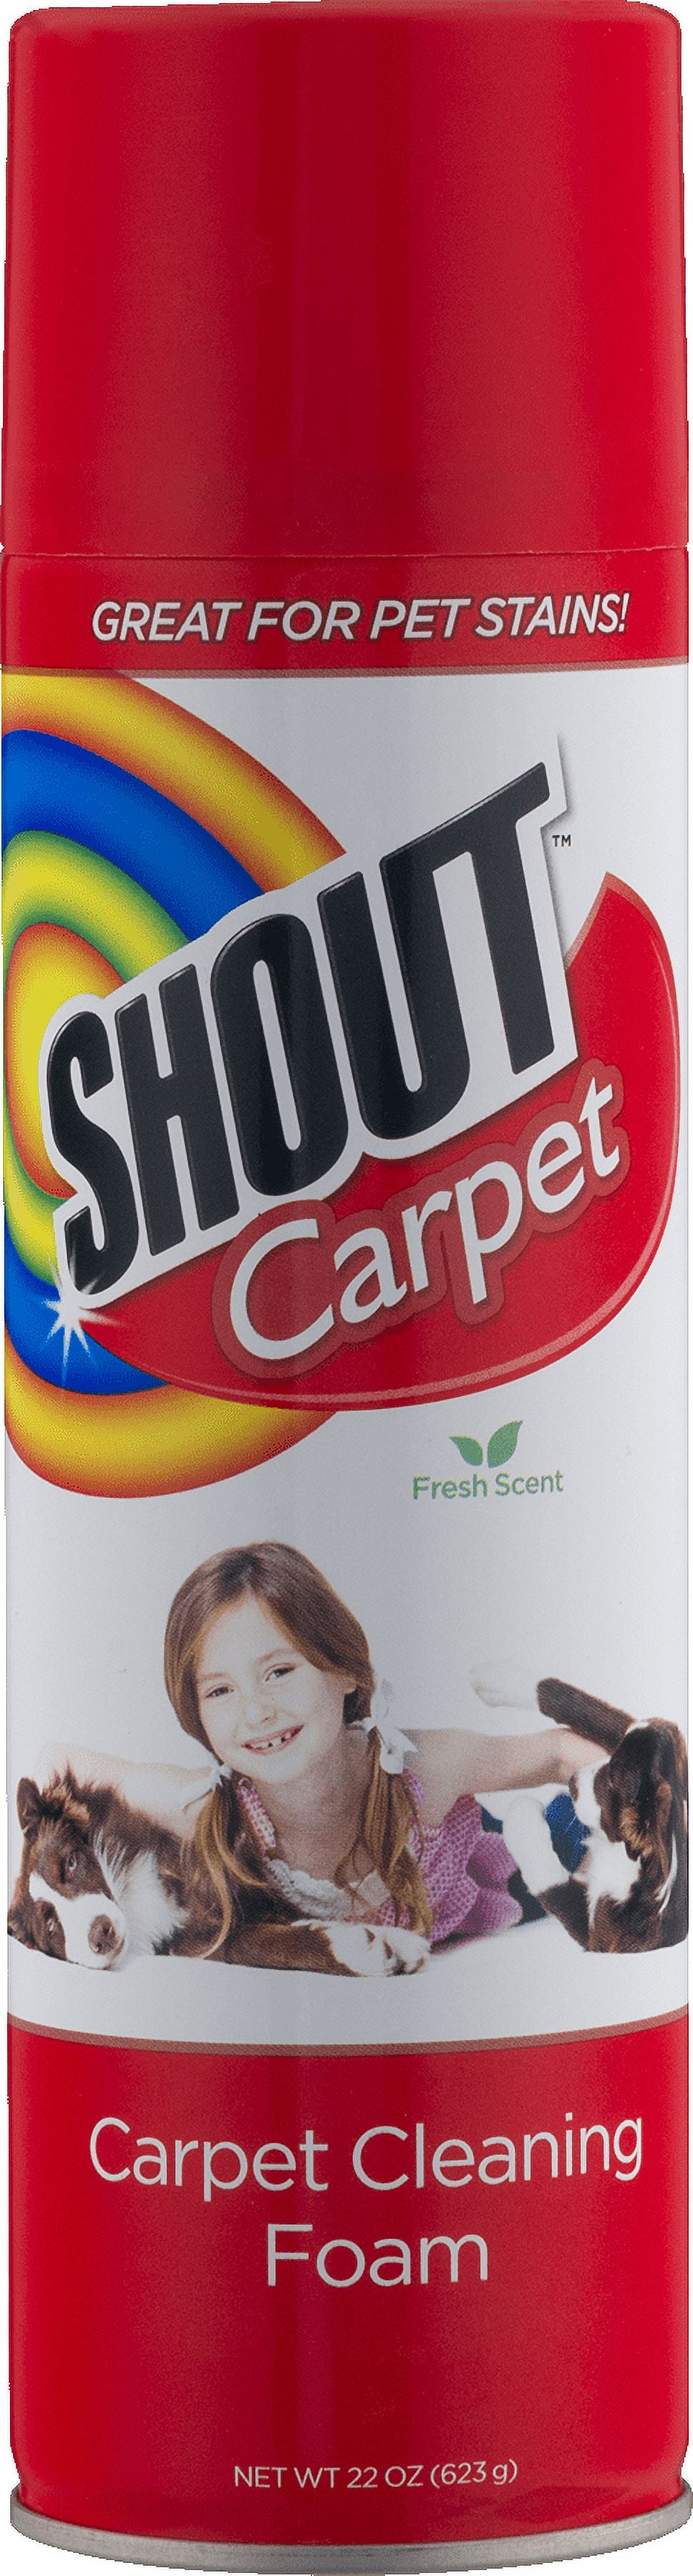 Shout Carpet Cl Foam, Hygiene, First Aid & Nutrition